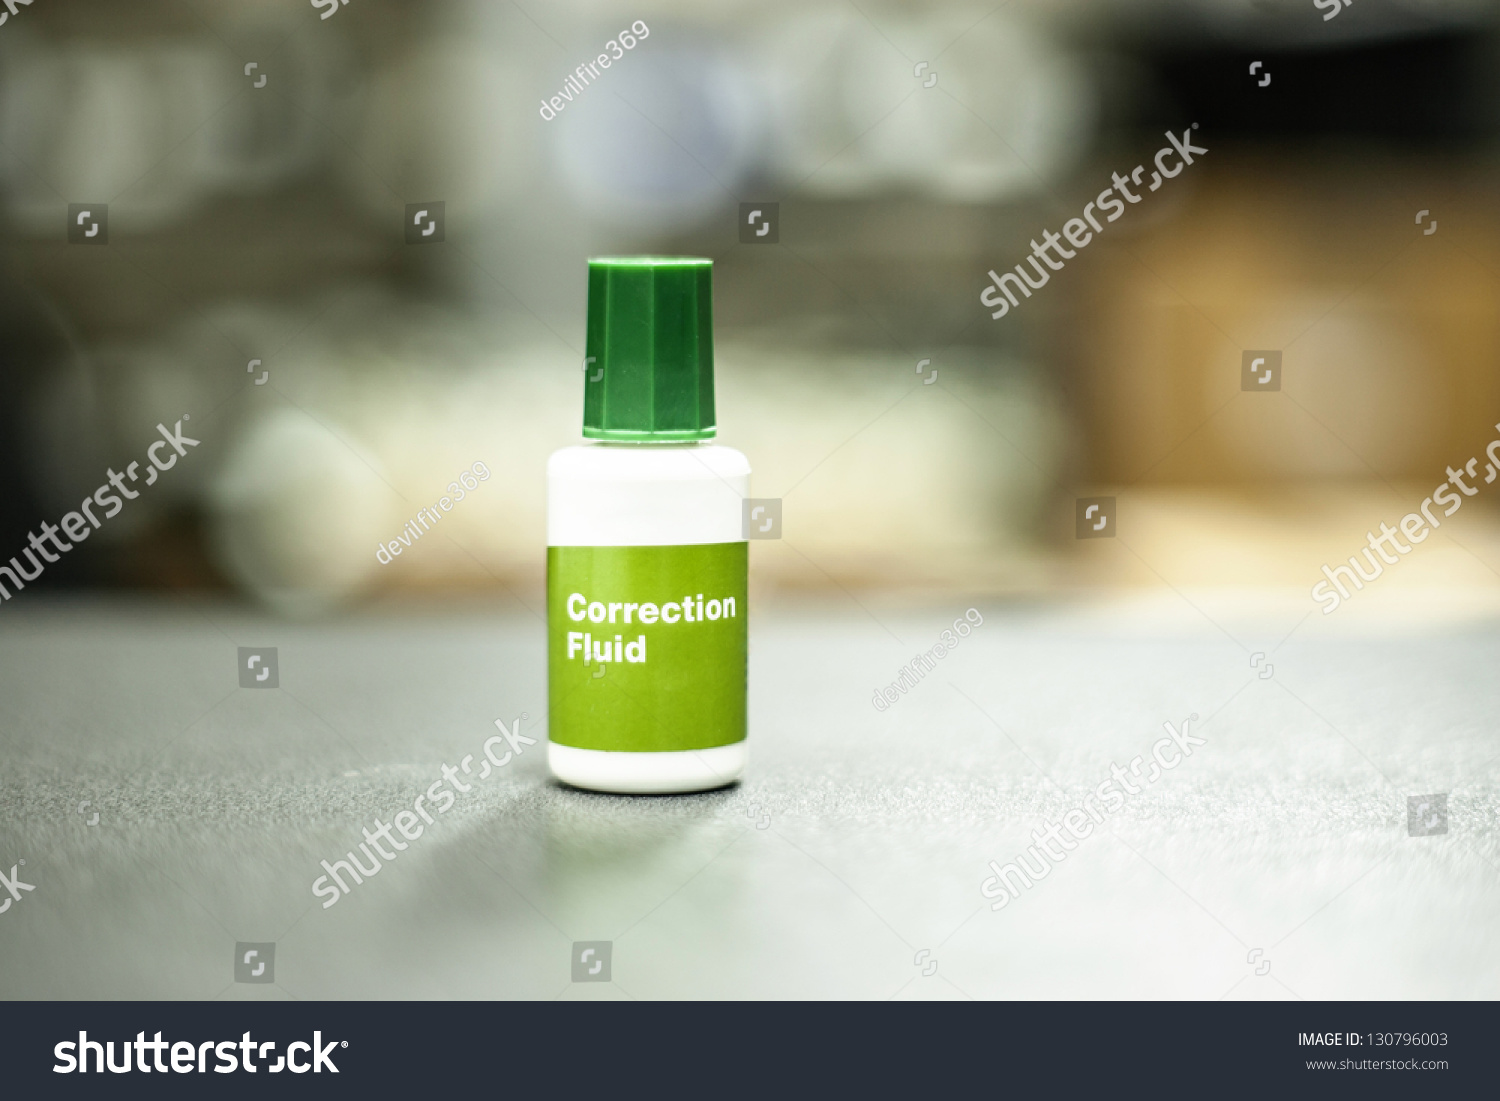 green correction fluid